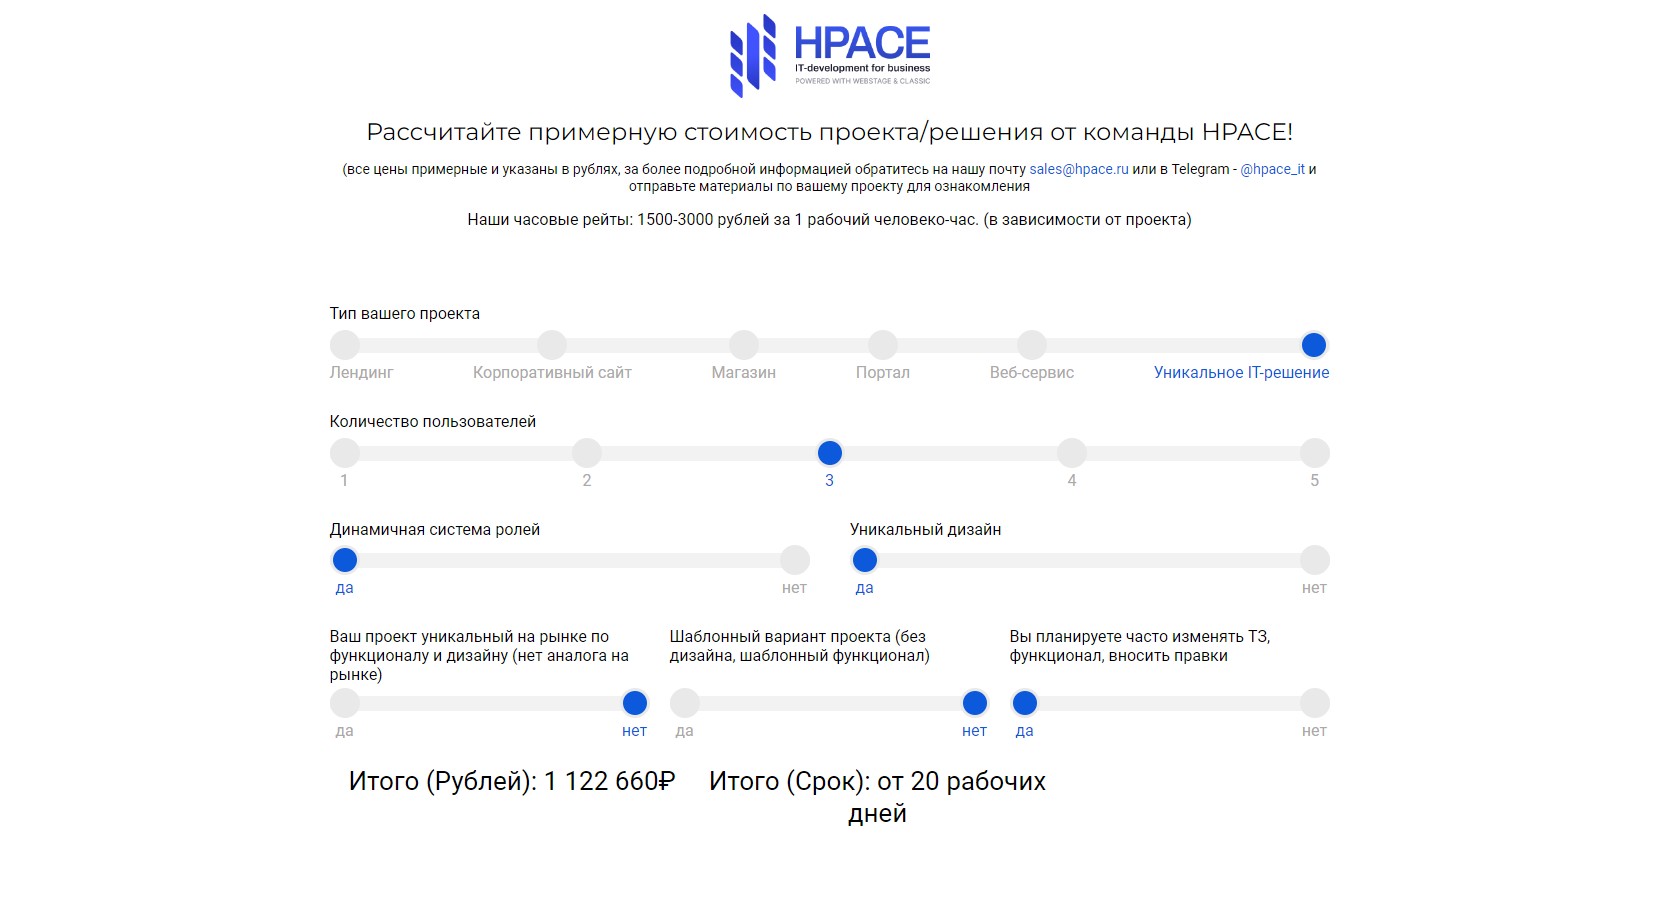 "Умный" калькулятор оценки проектов HPACE